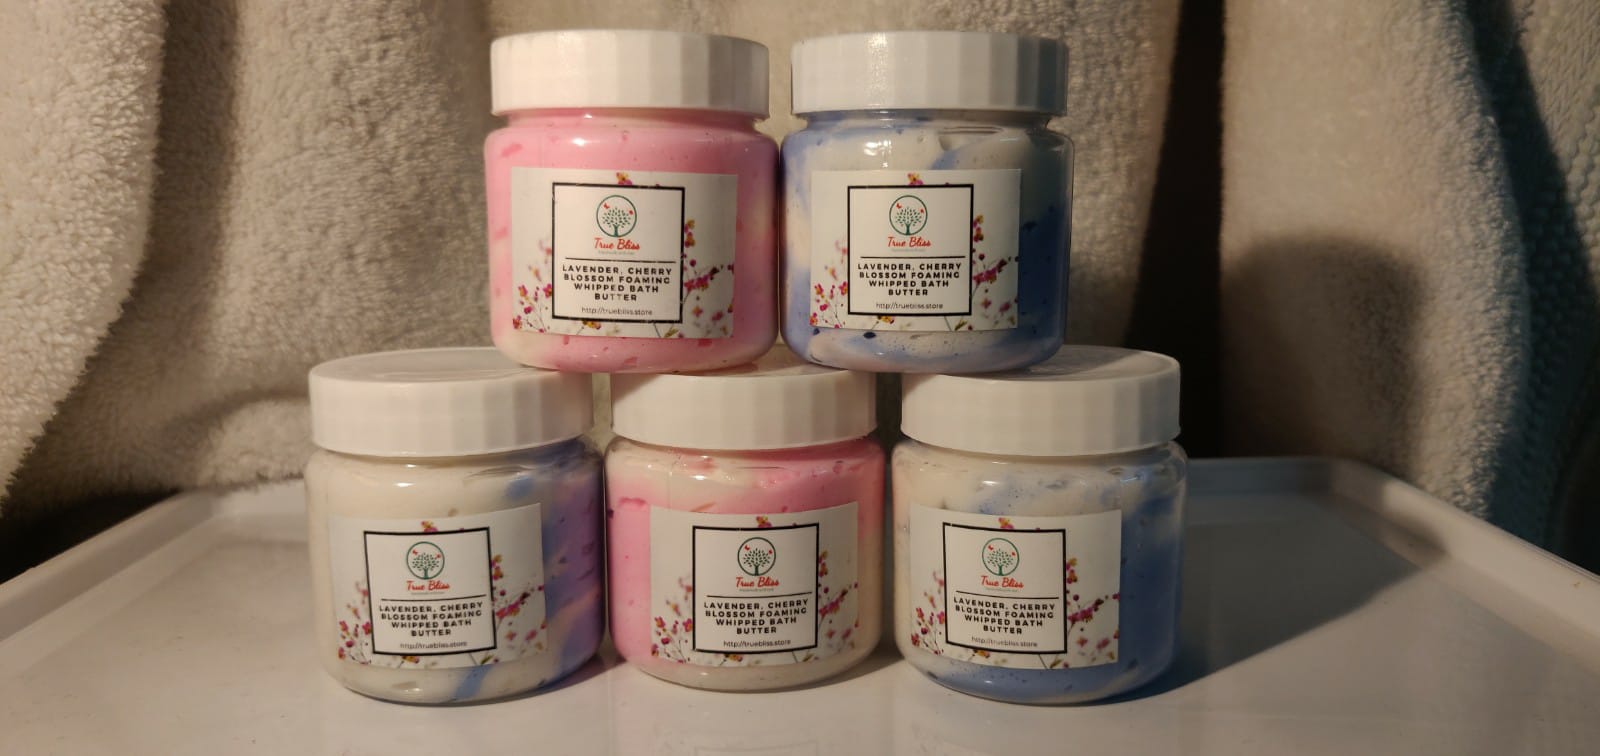 Lavender, Cherry Blossom Foaming Whipped Bath Butter - TrueBliss Skincare